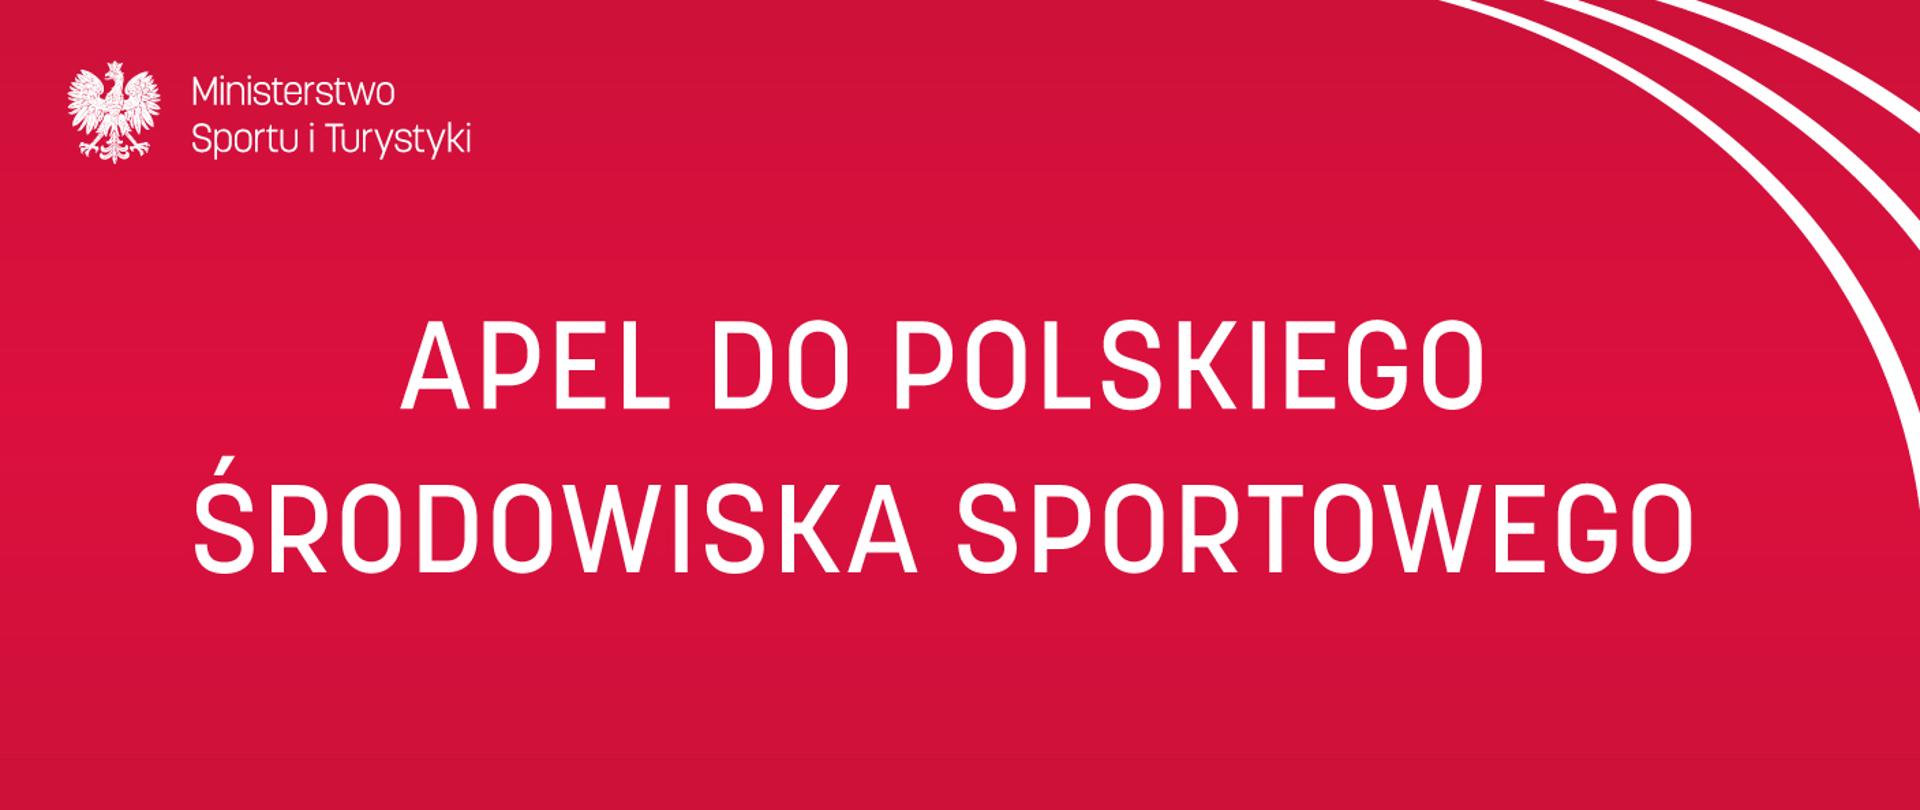 Apel do polskiego środowiska sportowego 